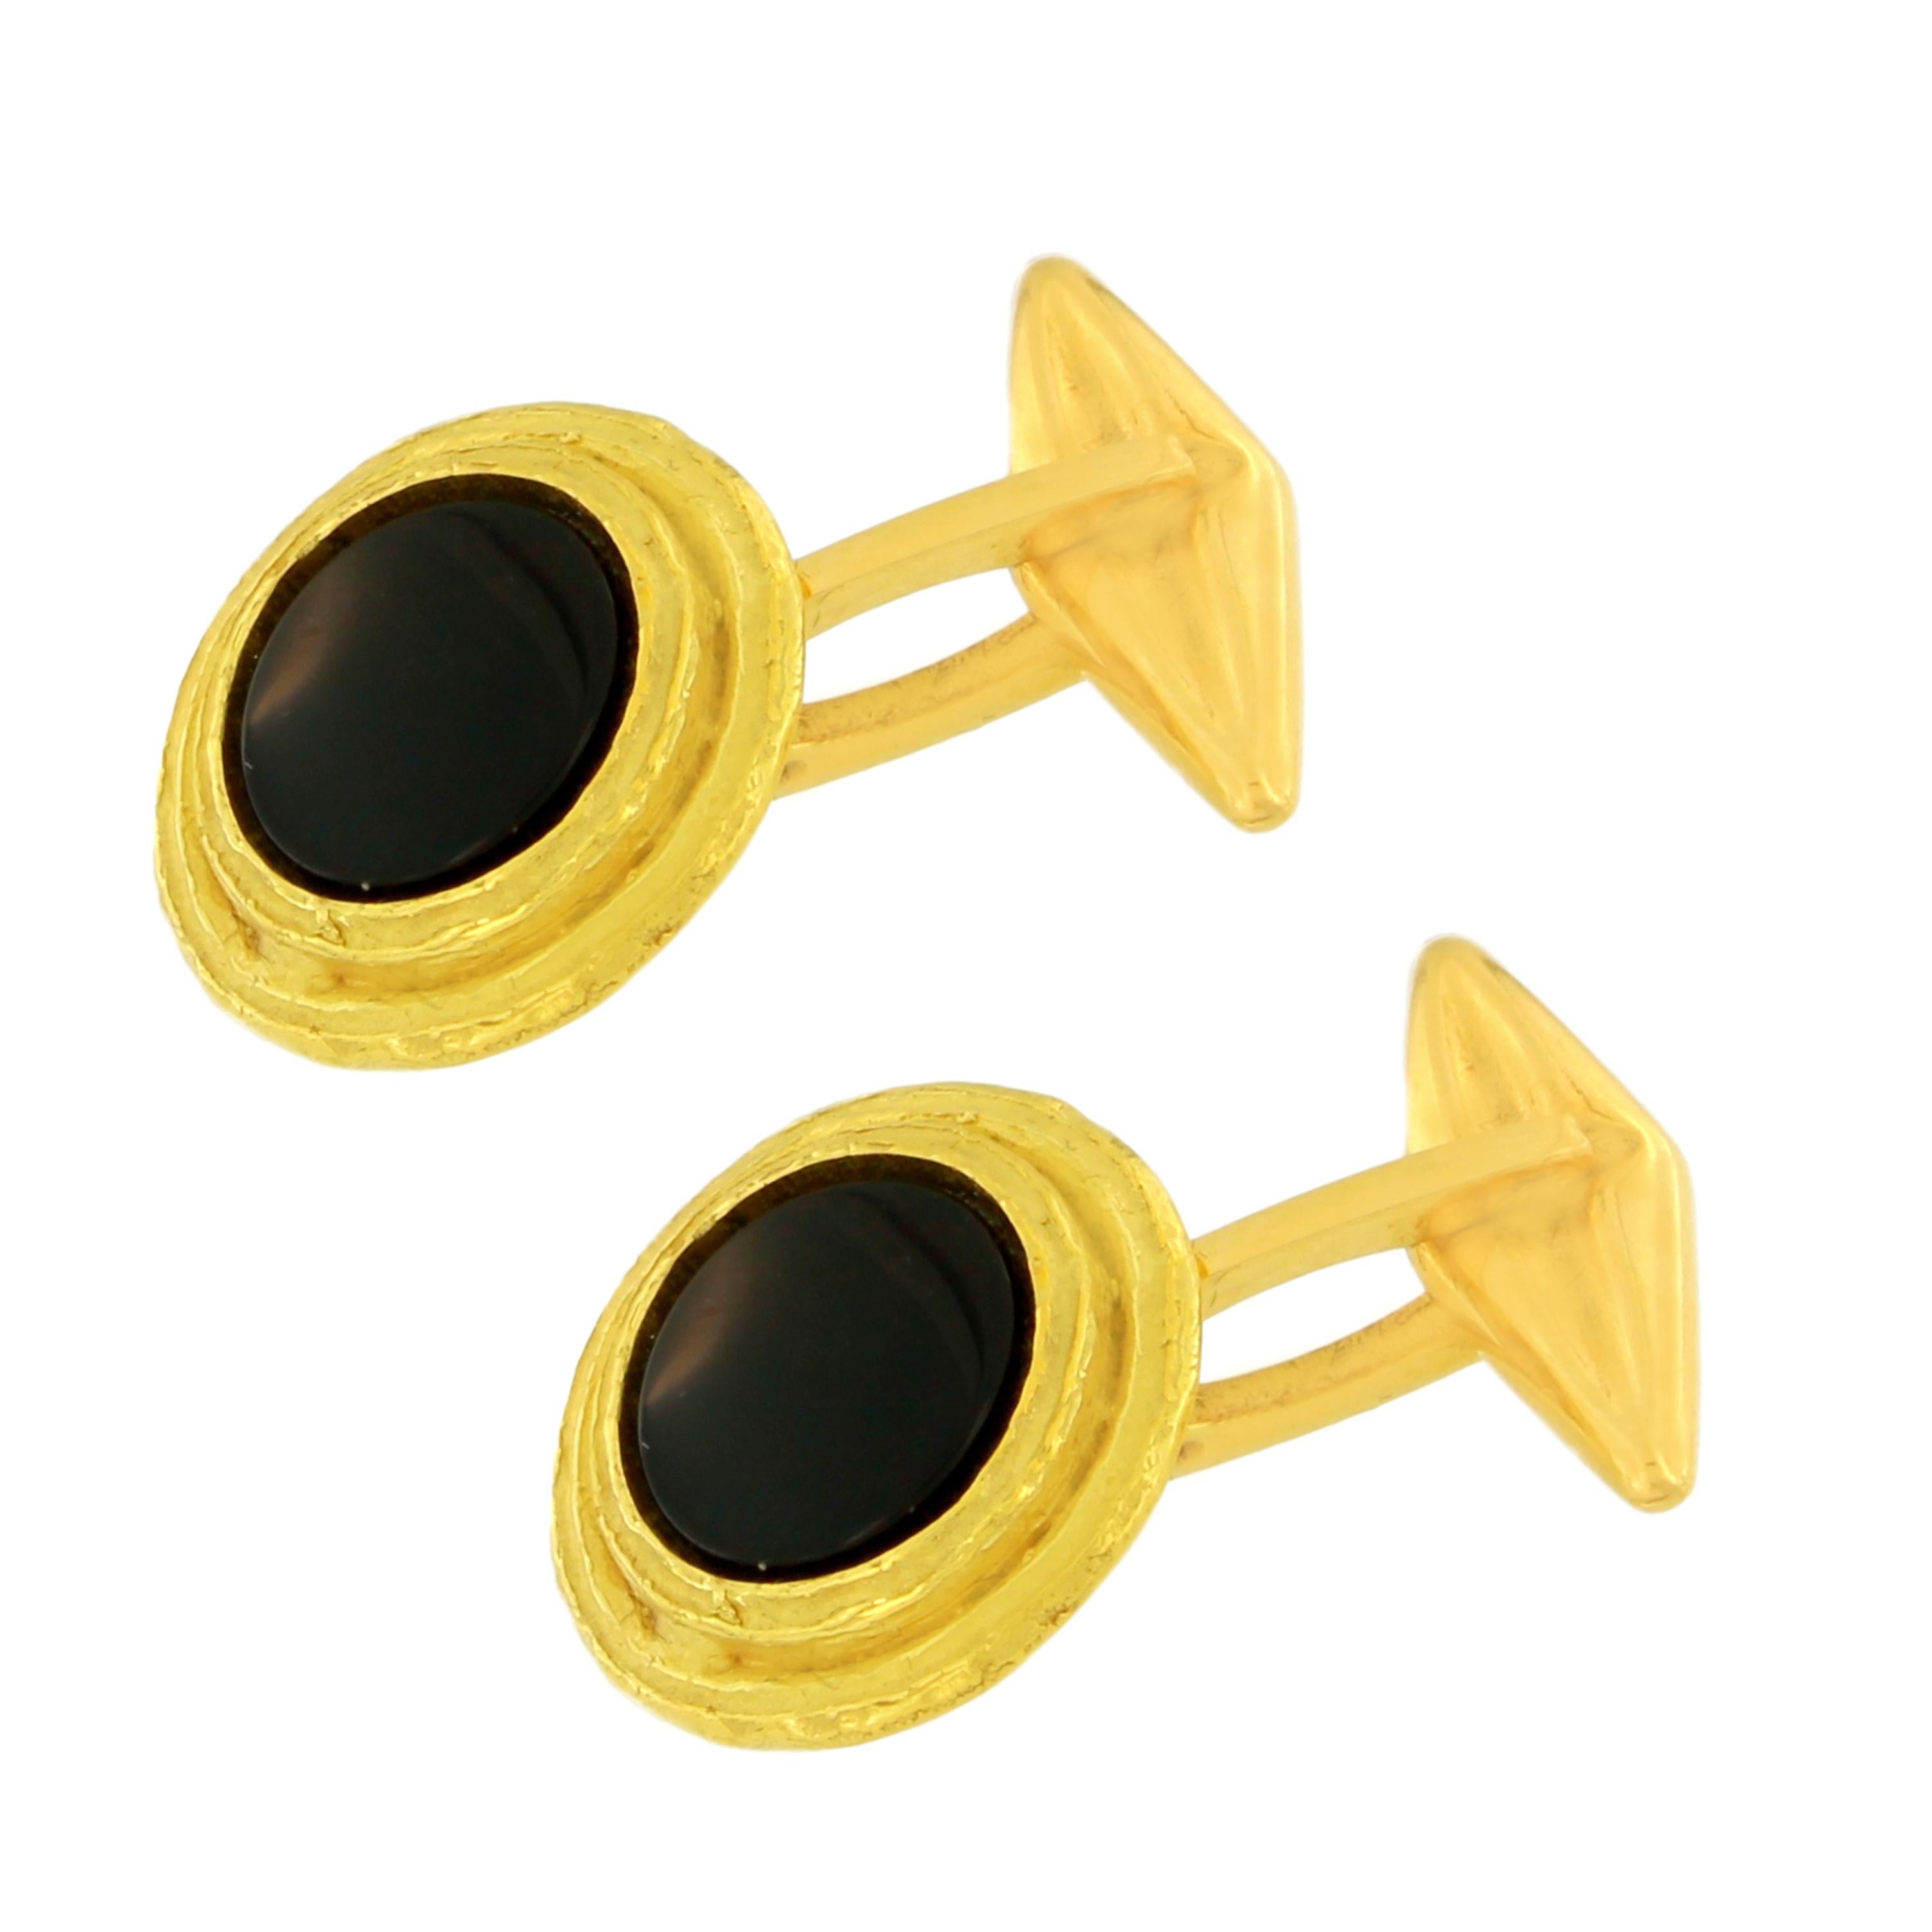 Schwarze Onyx Edelstein Satin Gelbgold Runde Manschettenknöpfe handgefertigt mit Wachsausschmelzverfahren.

Der Wachsausschmelzguss, eine der ältesten Techniken zur Herstellung von Schmuck, bildet die Grundlage für die Schmuckproduktion von Sacchi.